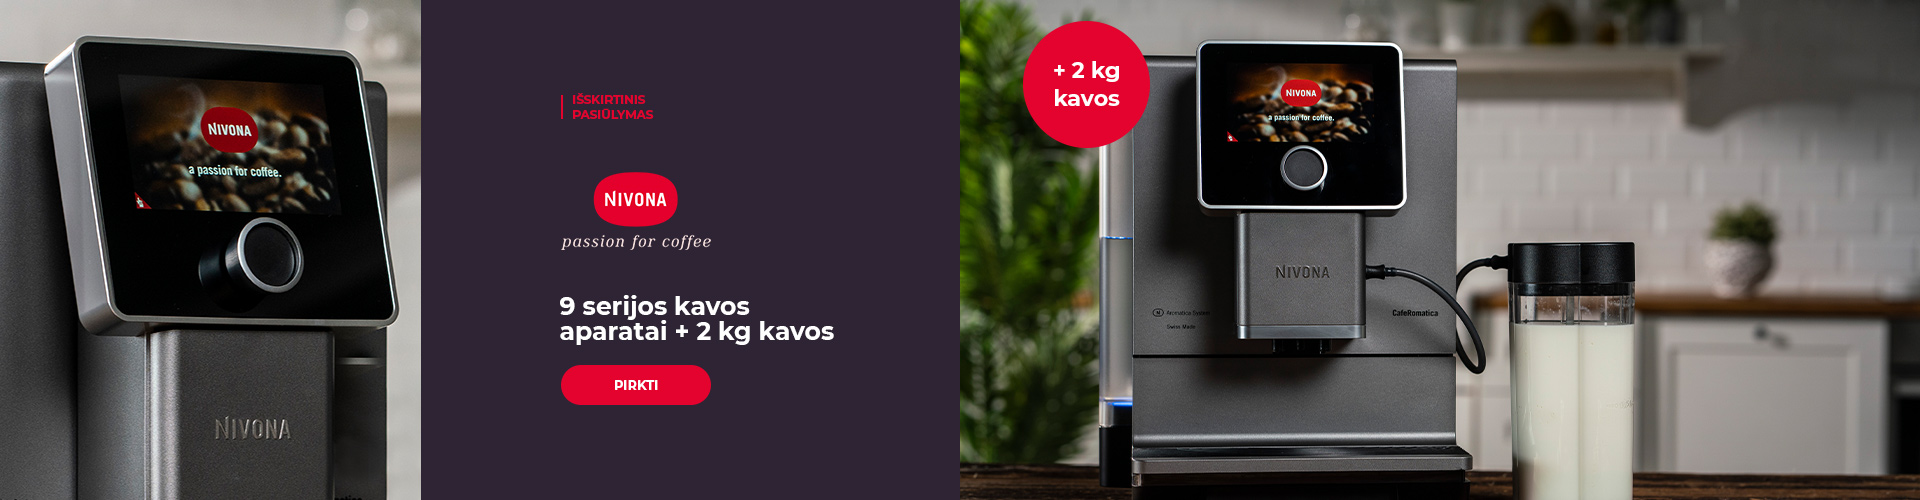 NIVONA 9 serijos kavos aparatai + 2 kg kavos